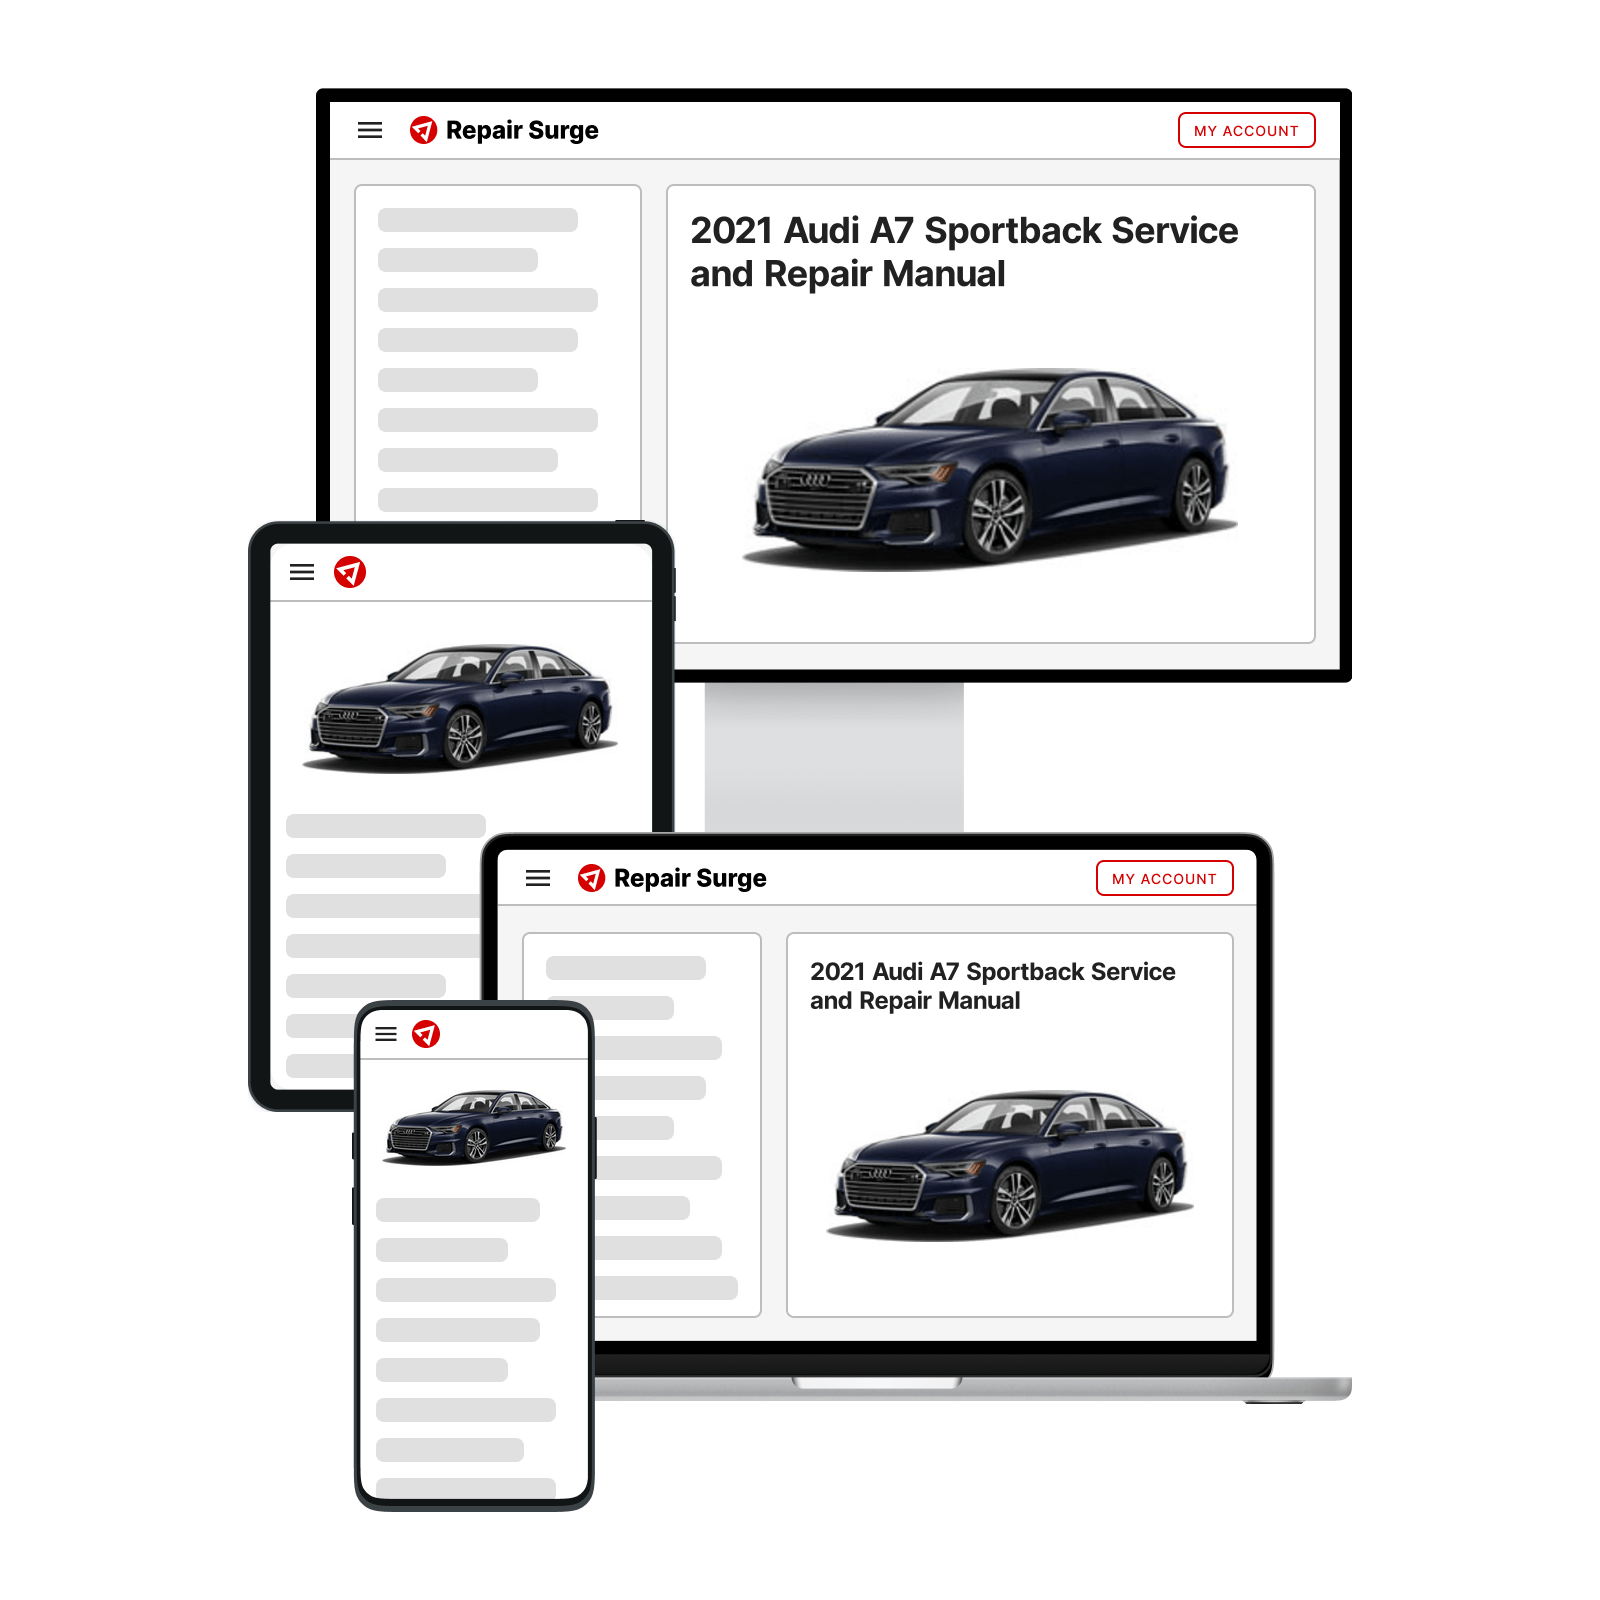 2021 Audi A7 Sportback service and repair manual hero image